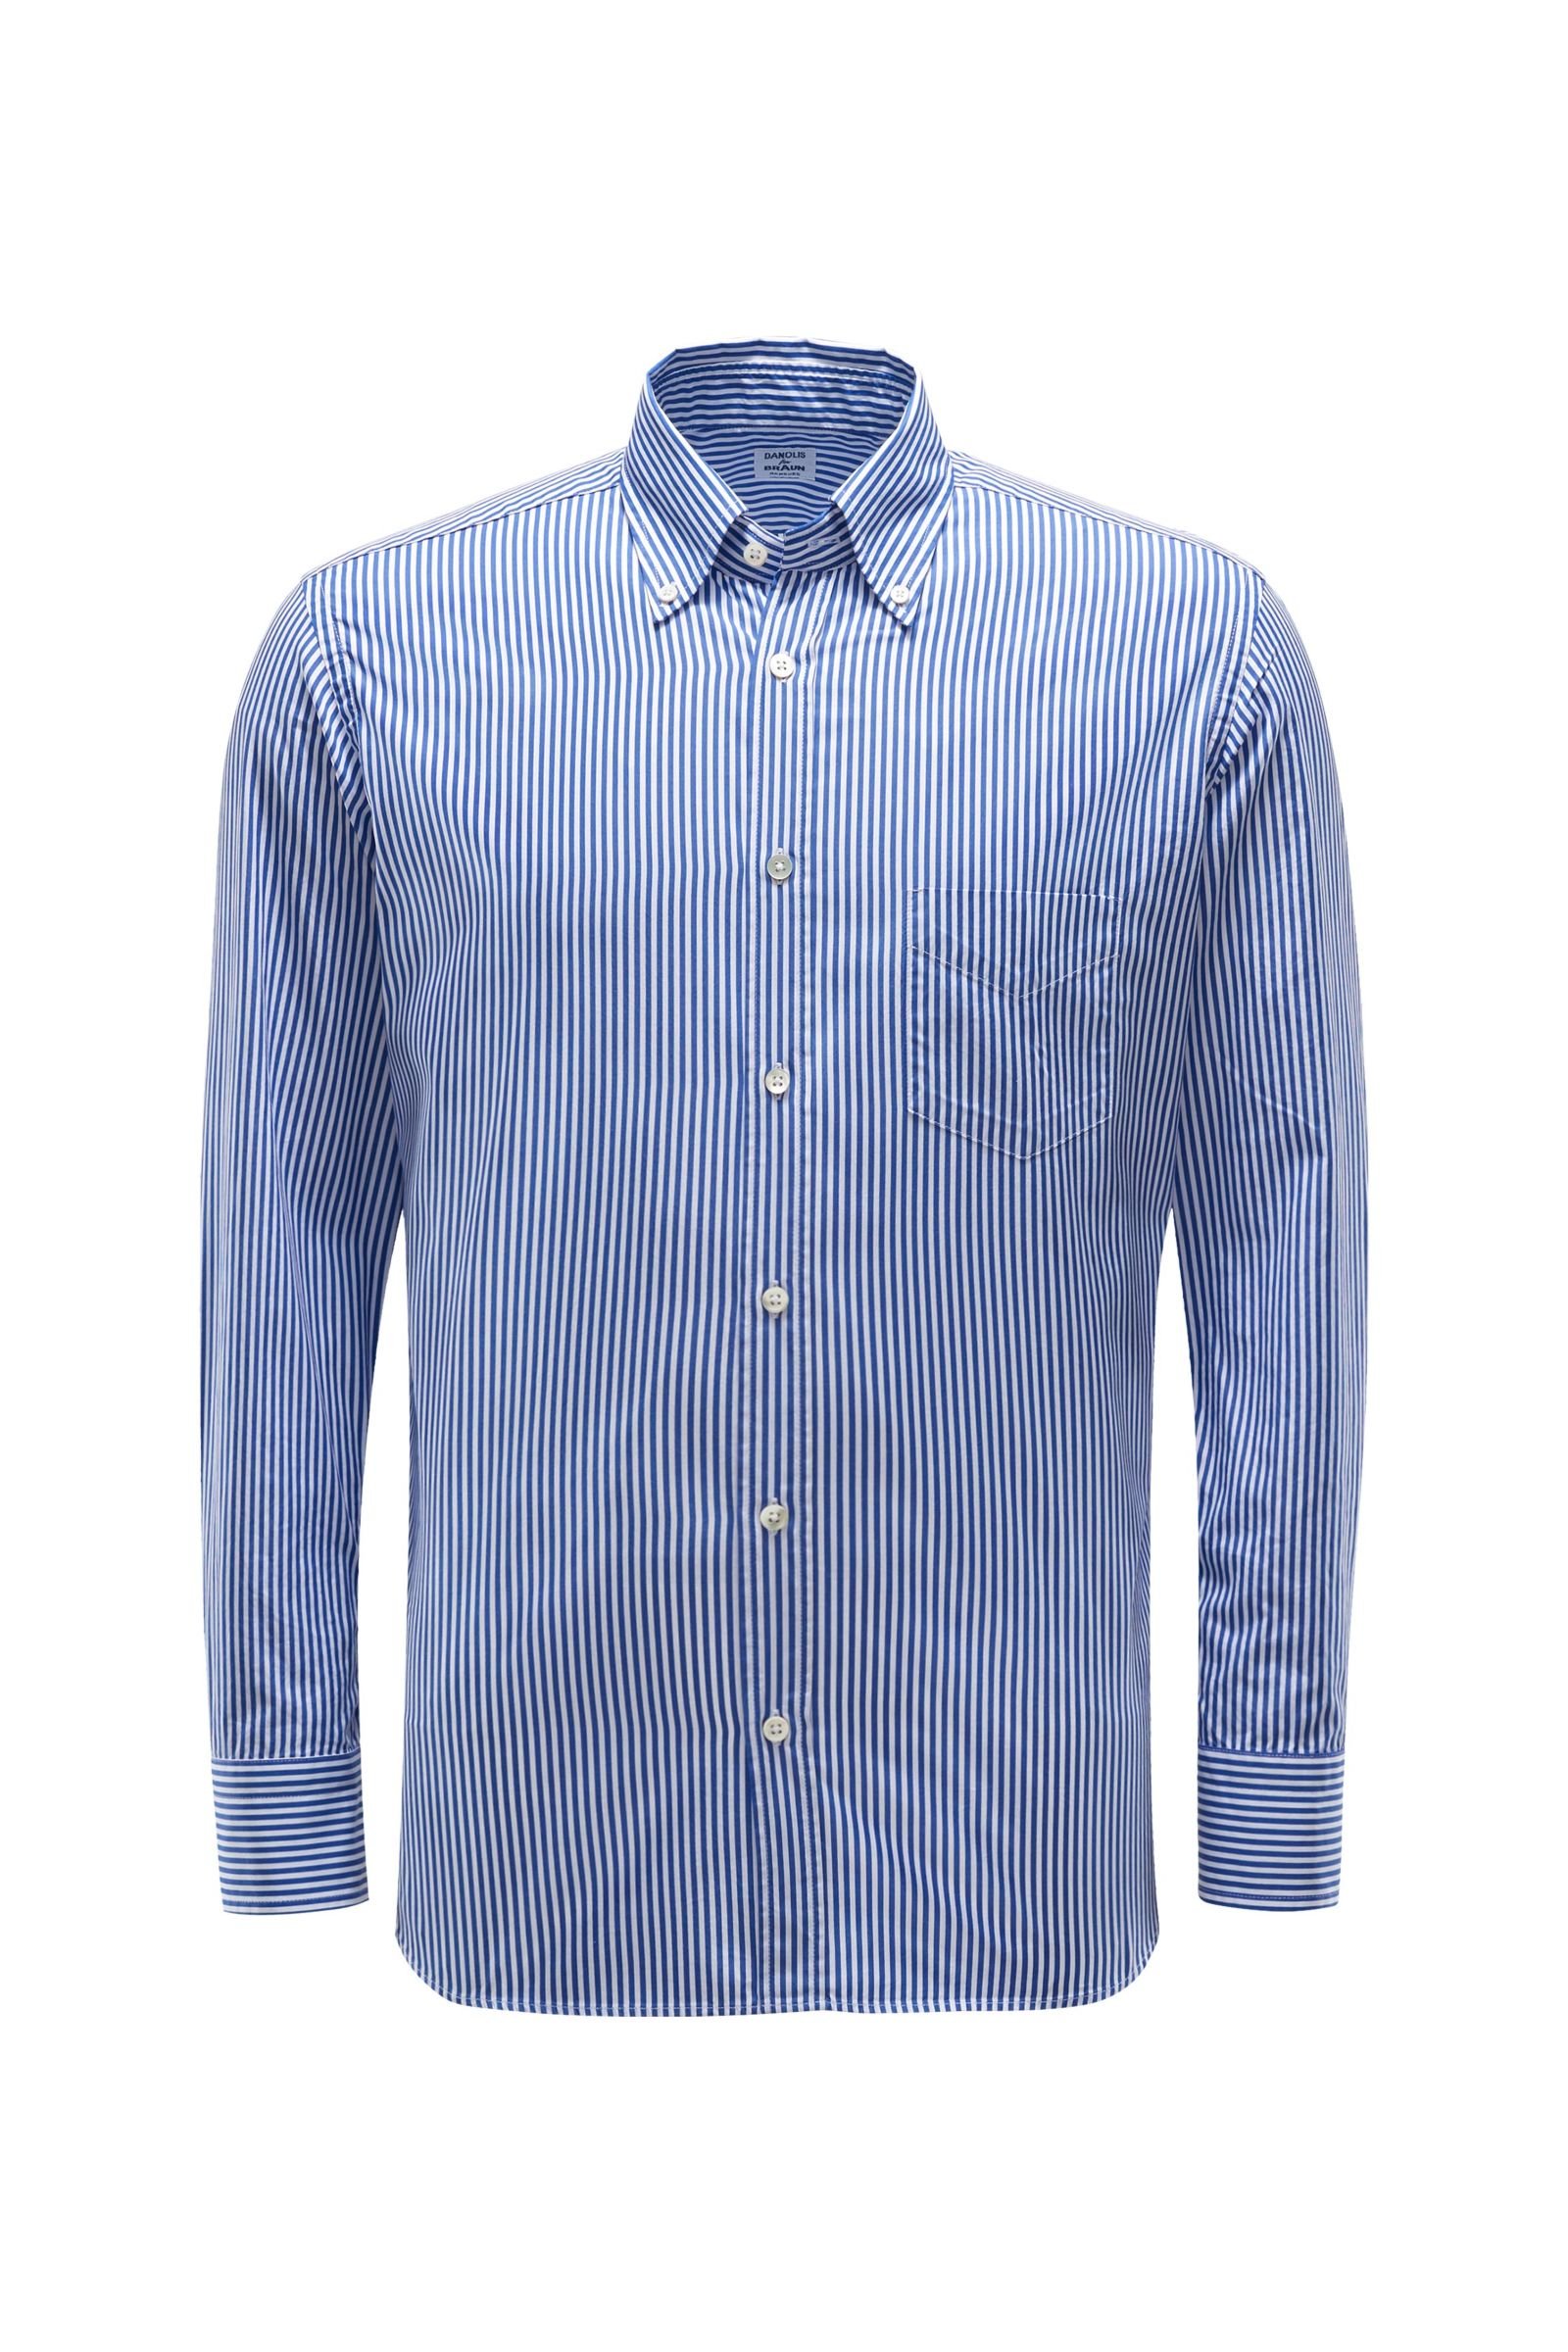 Casual shirt button-down collar blue/white striped